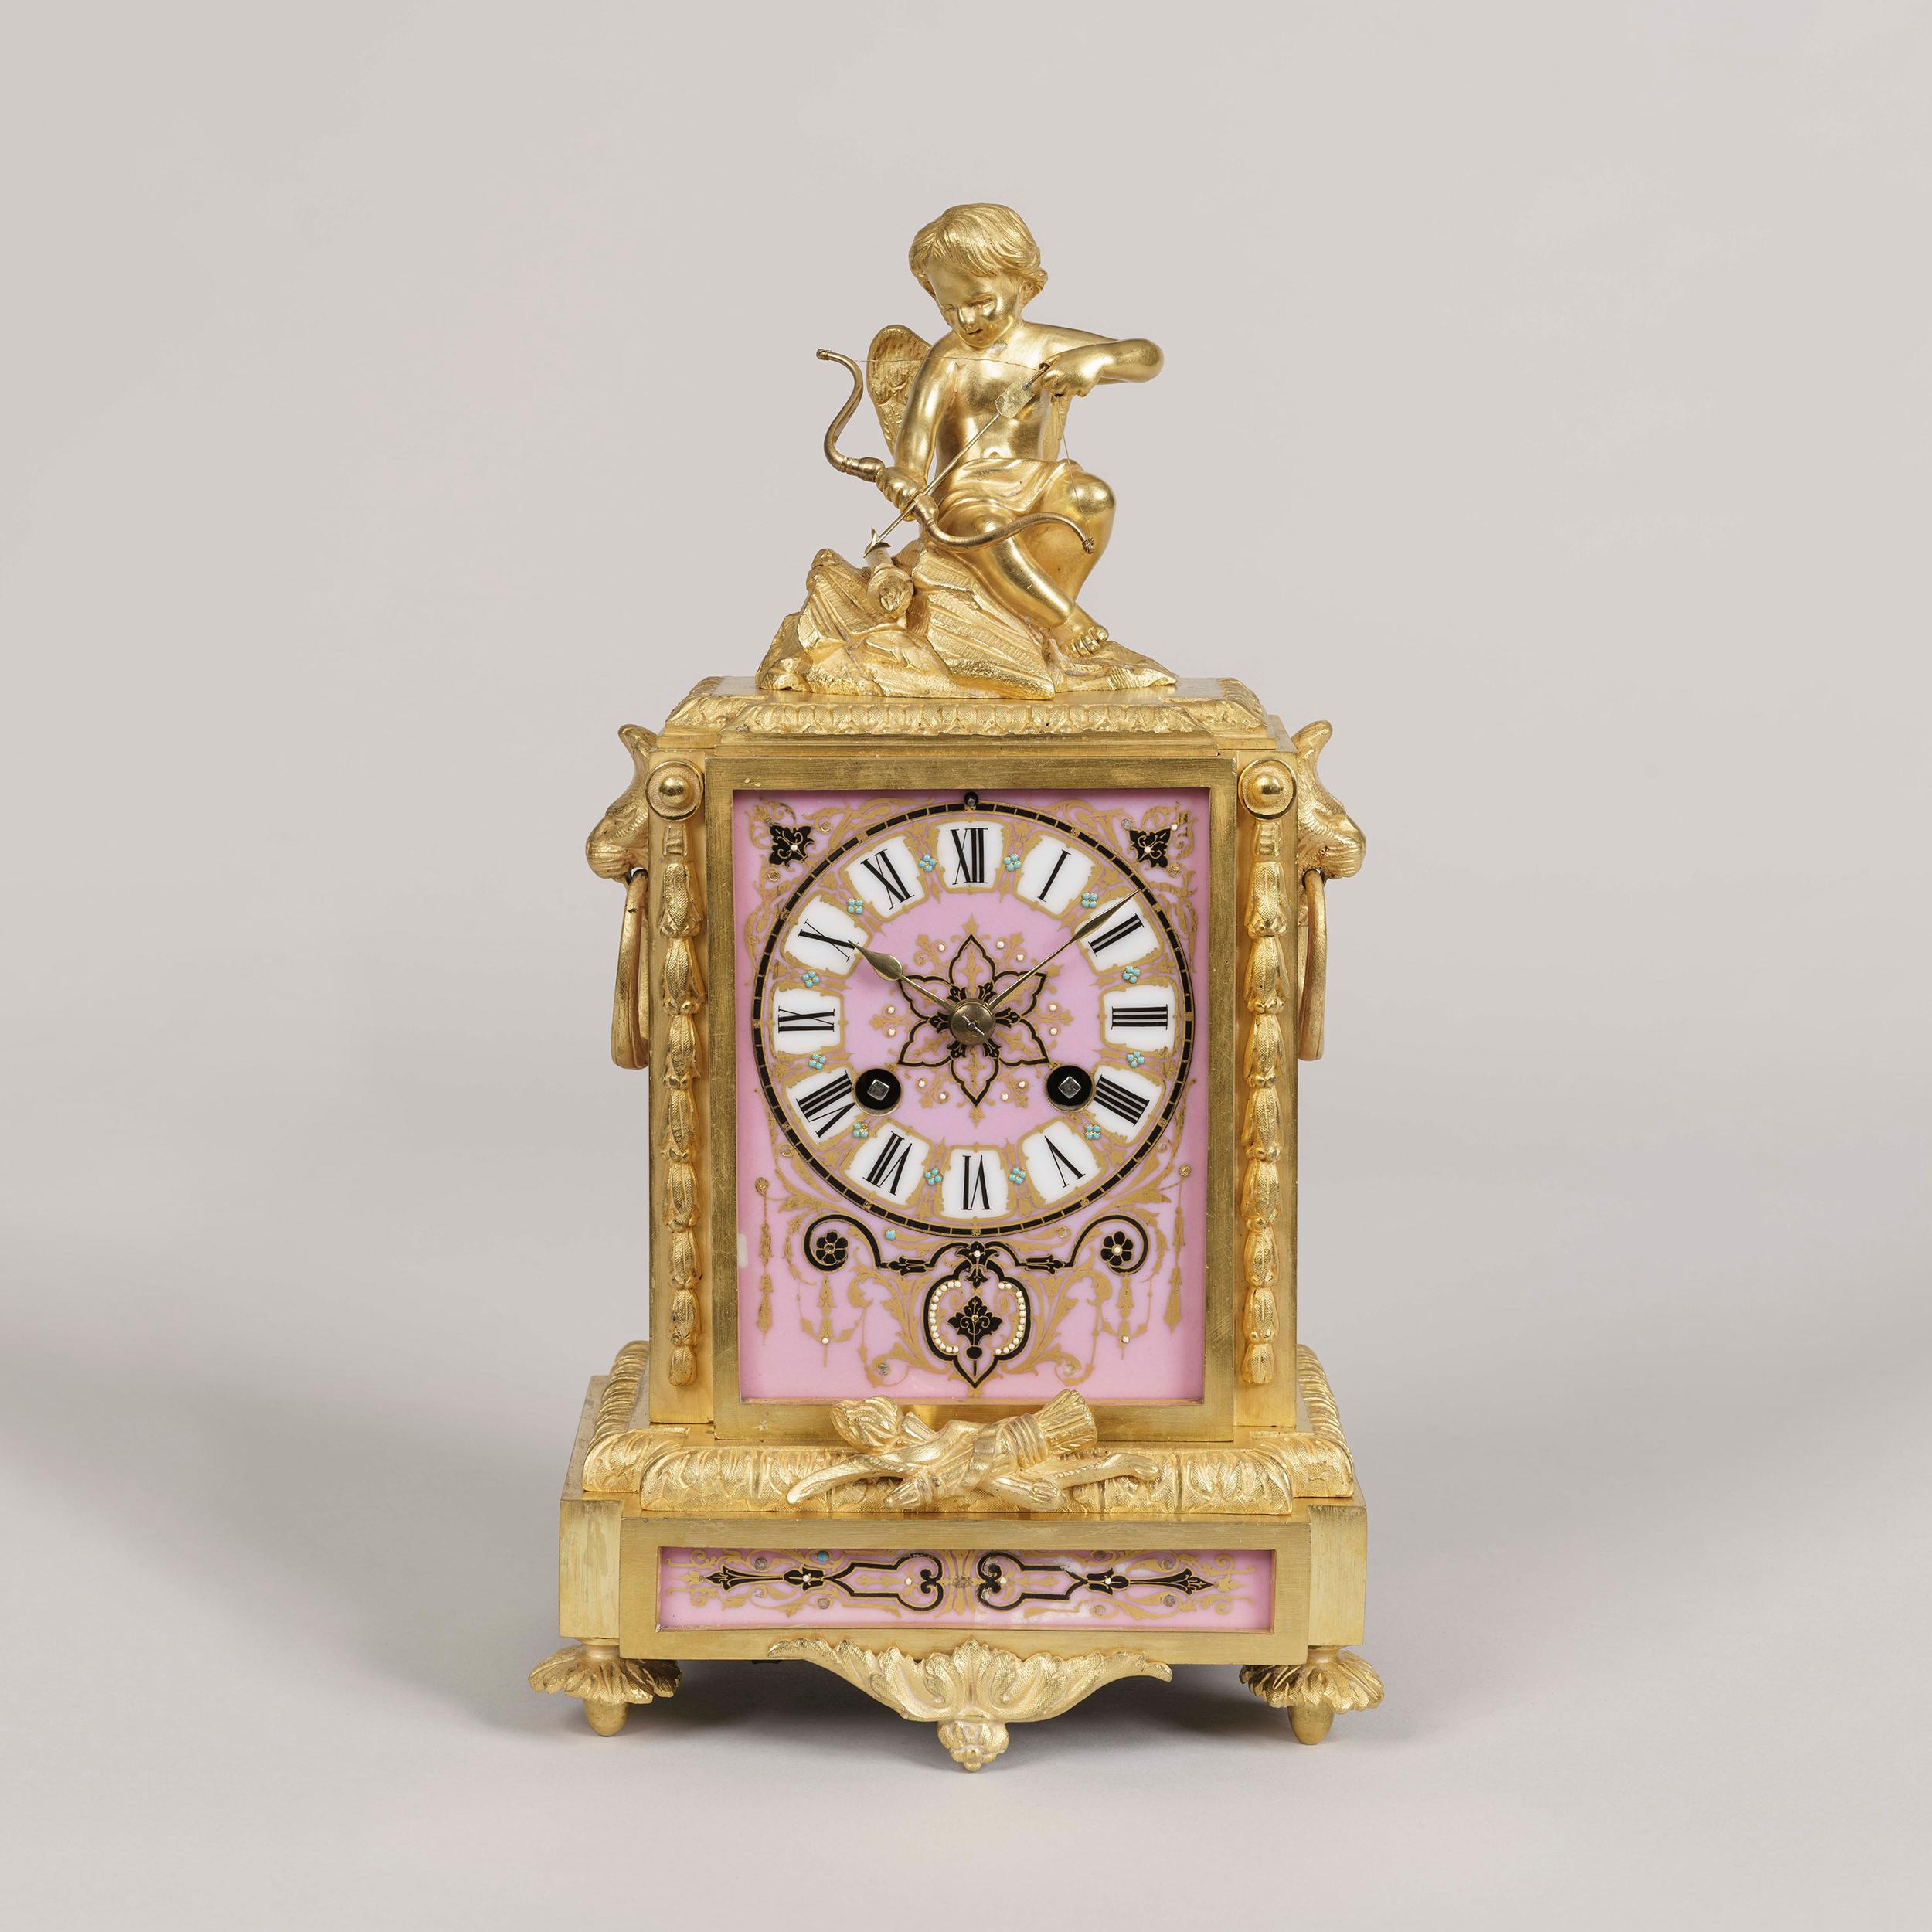 Une horloge symbolique de style Louis XVI
Par Japy Fréres et Cie.

Le boîtier en bronze doré finement ciselé englobe des panneaux de porcelaine rose décorés de perles sur la face et les côtés, le tout surmonté de la figure de Cupidon et de son